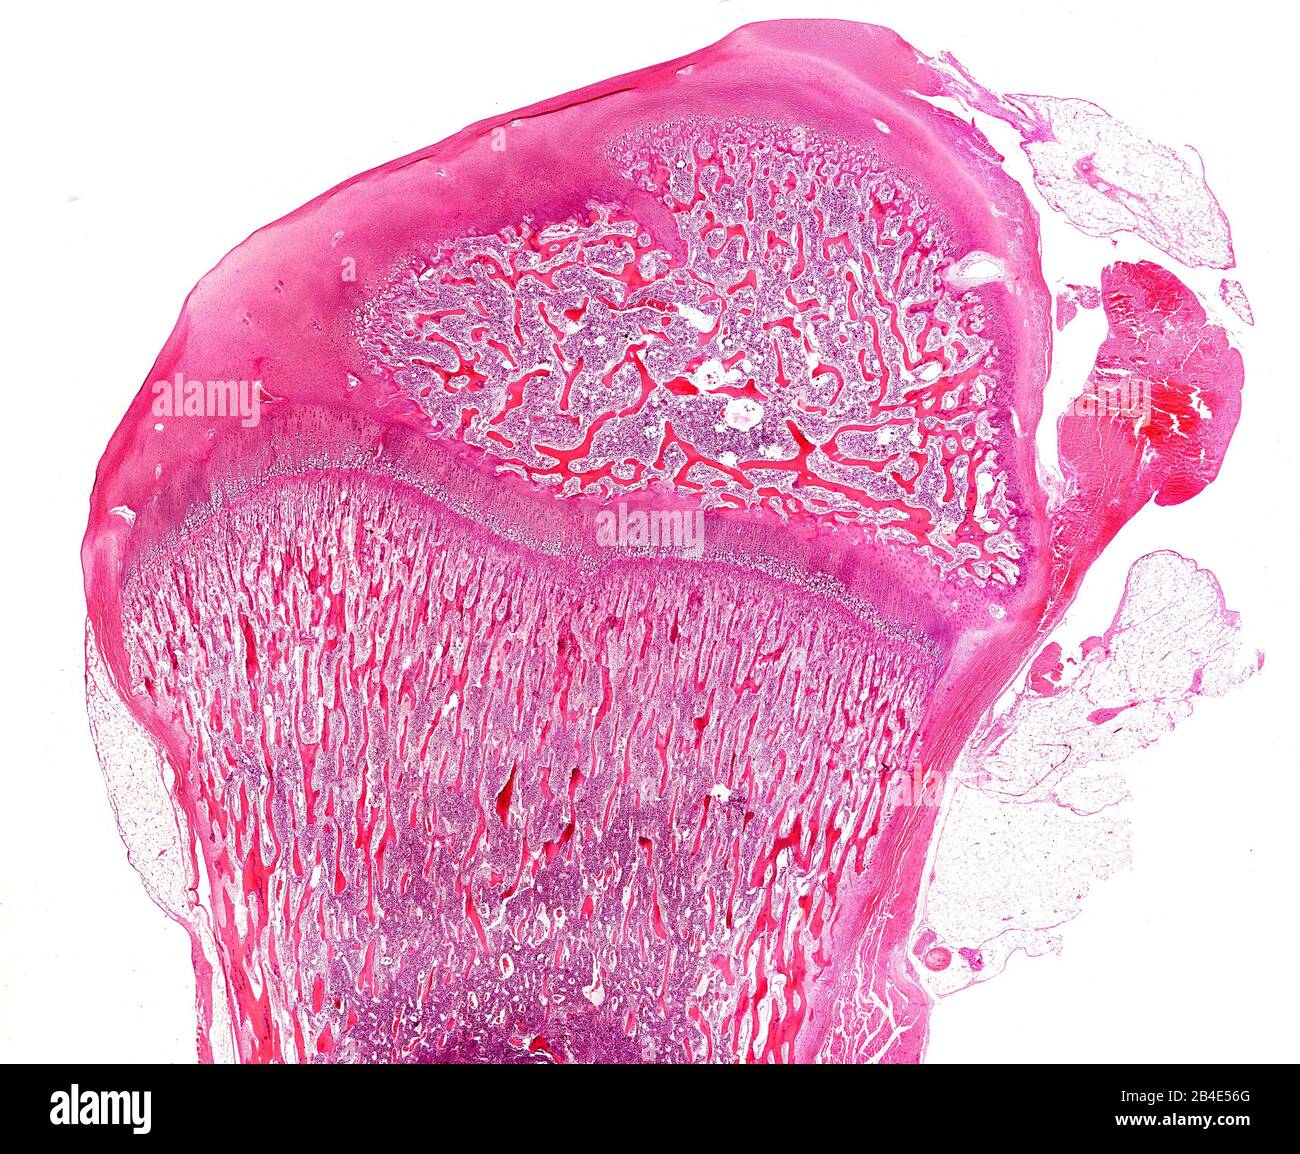 Épiphyse d'un os long en développement. Une plaque de croissance est située entre les centres d'ossification primaire (vers le bas) et secondaire (vers le haut). Banque D'Images